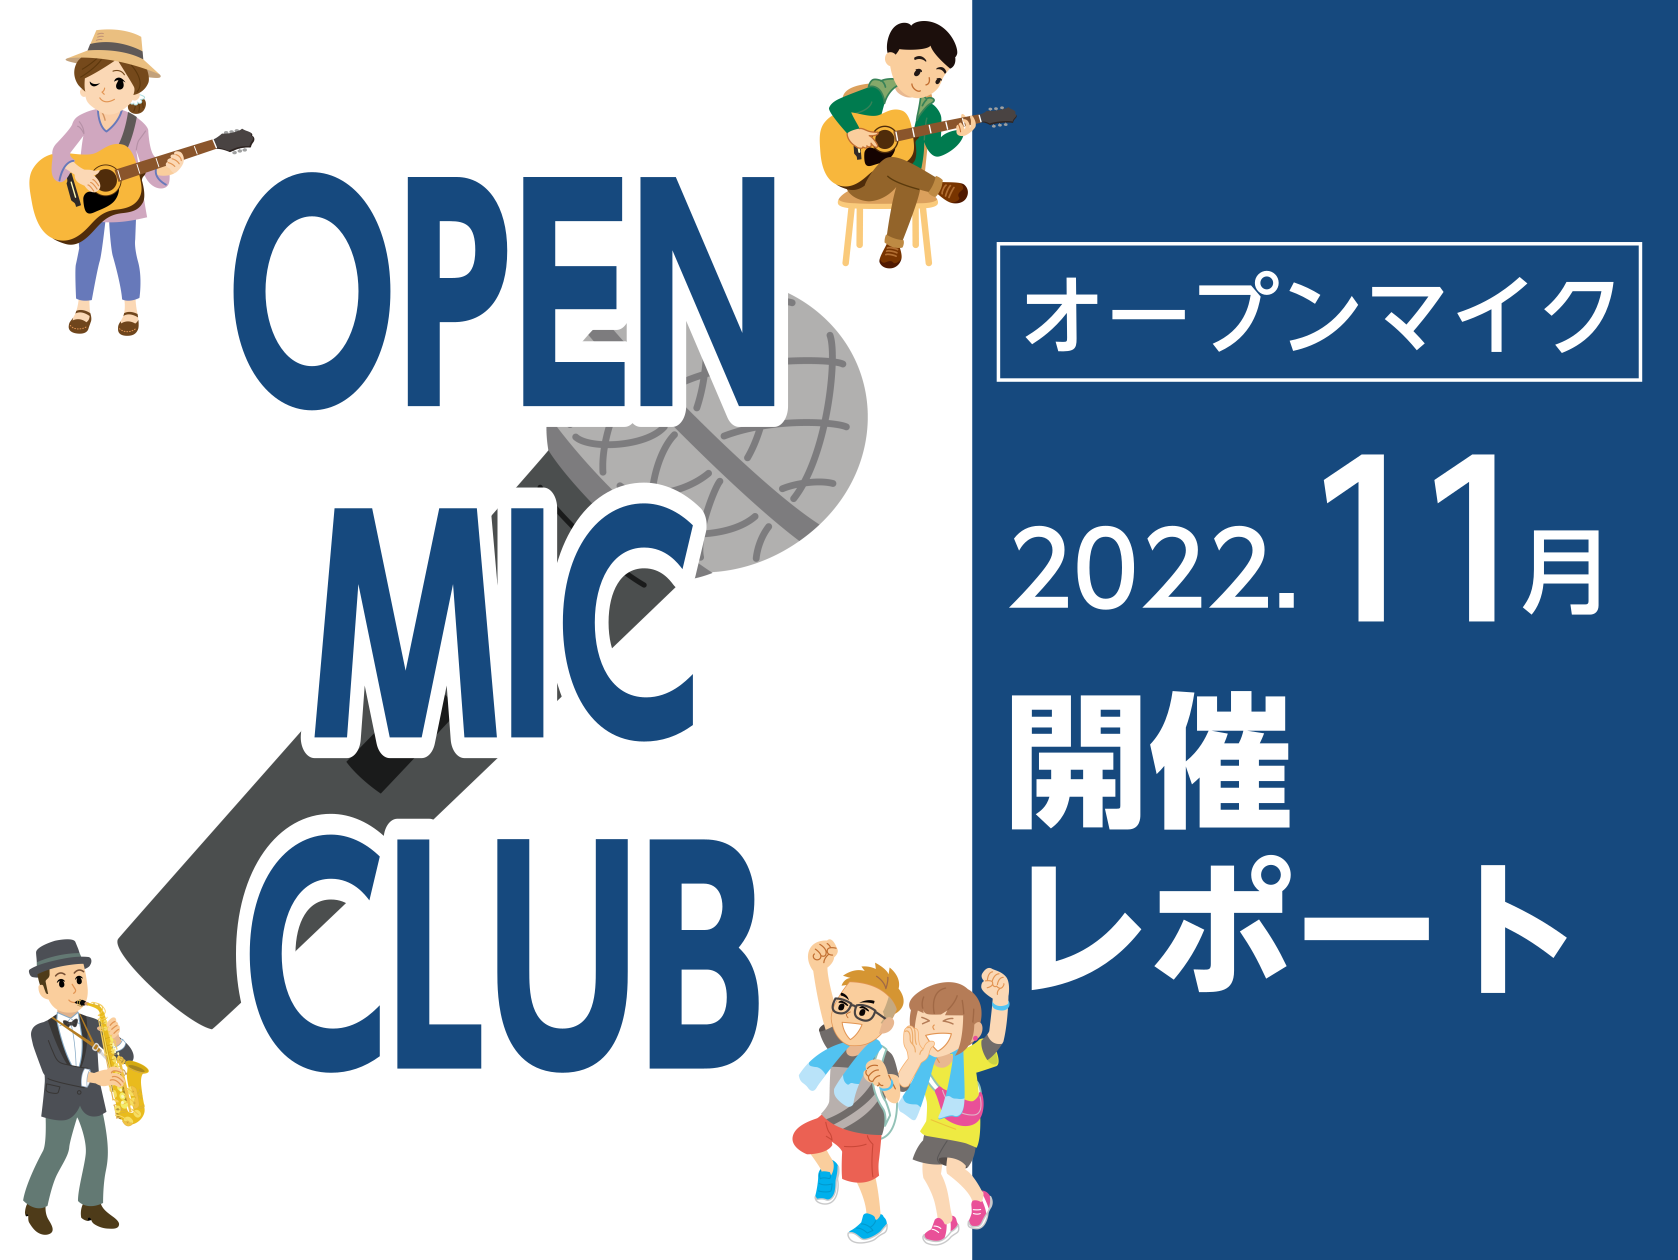 CONTENTS11月開催の様子参加者募集中11月開催の様子 誰でも自由に参加可能で、店内のオープンスペースを使ってライブができるイベント「OPEN MIC CLUB」を11月27日（日）に開催しました！今回は計4組がご出演されました！当日の様子の写真を掲載いたします。 kimidoripapa オ […]